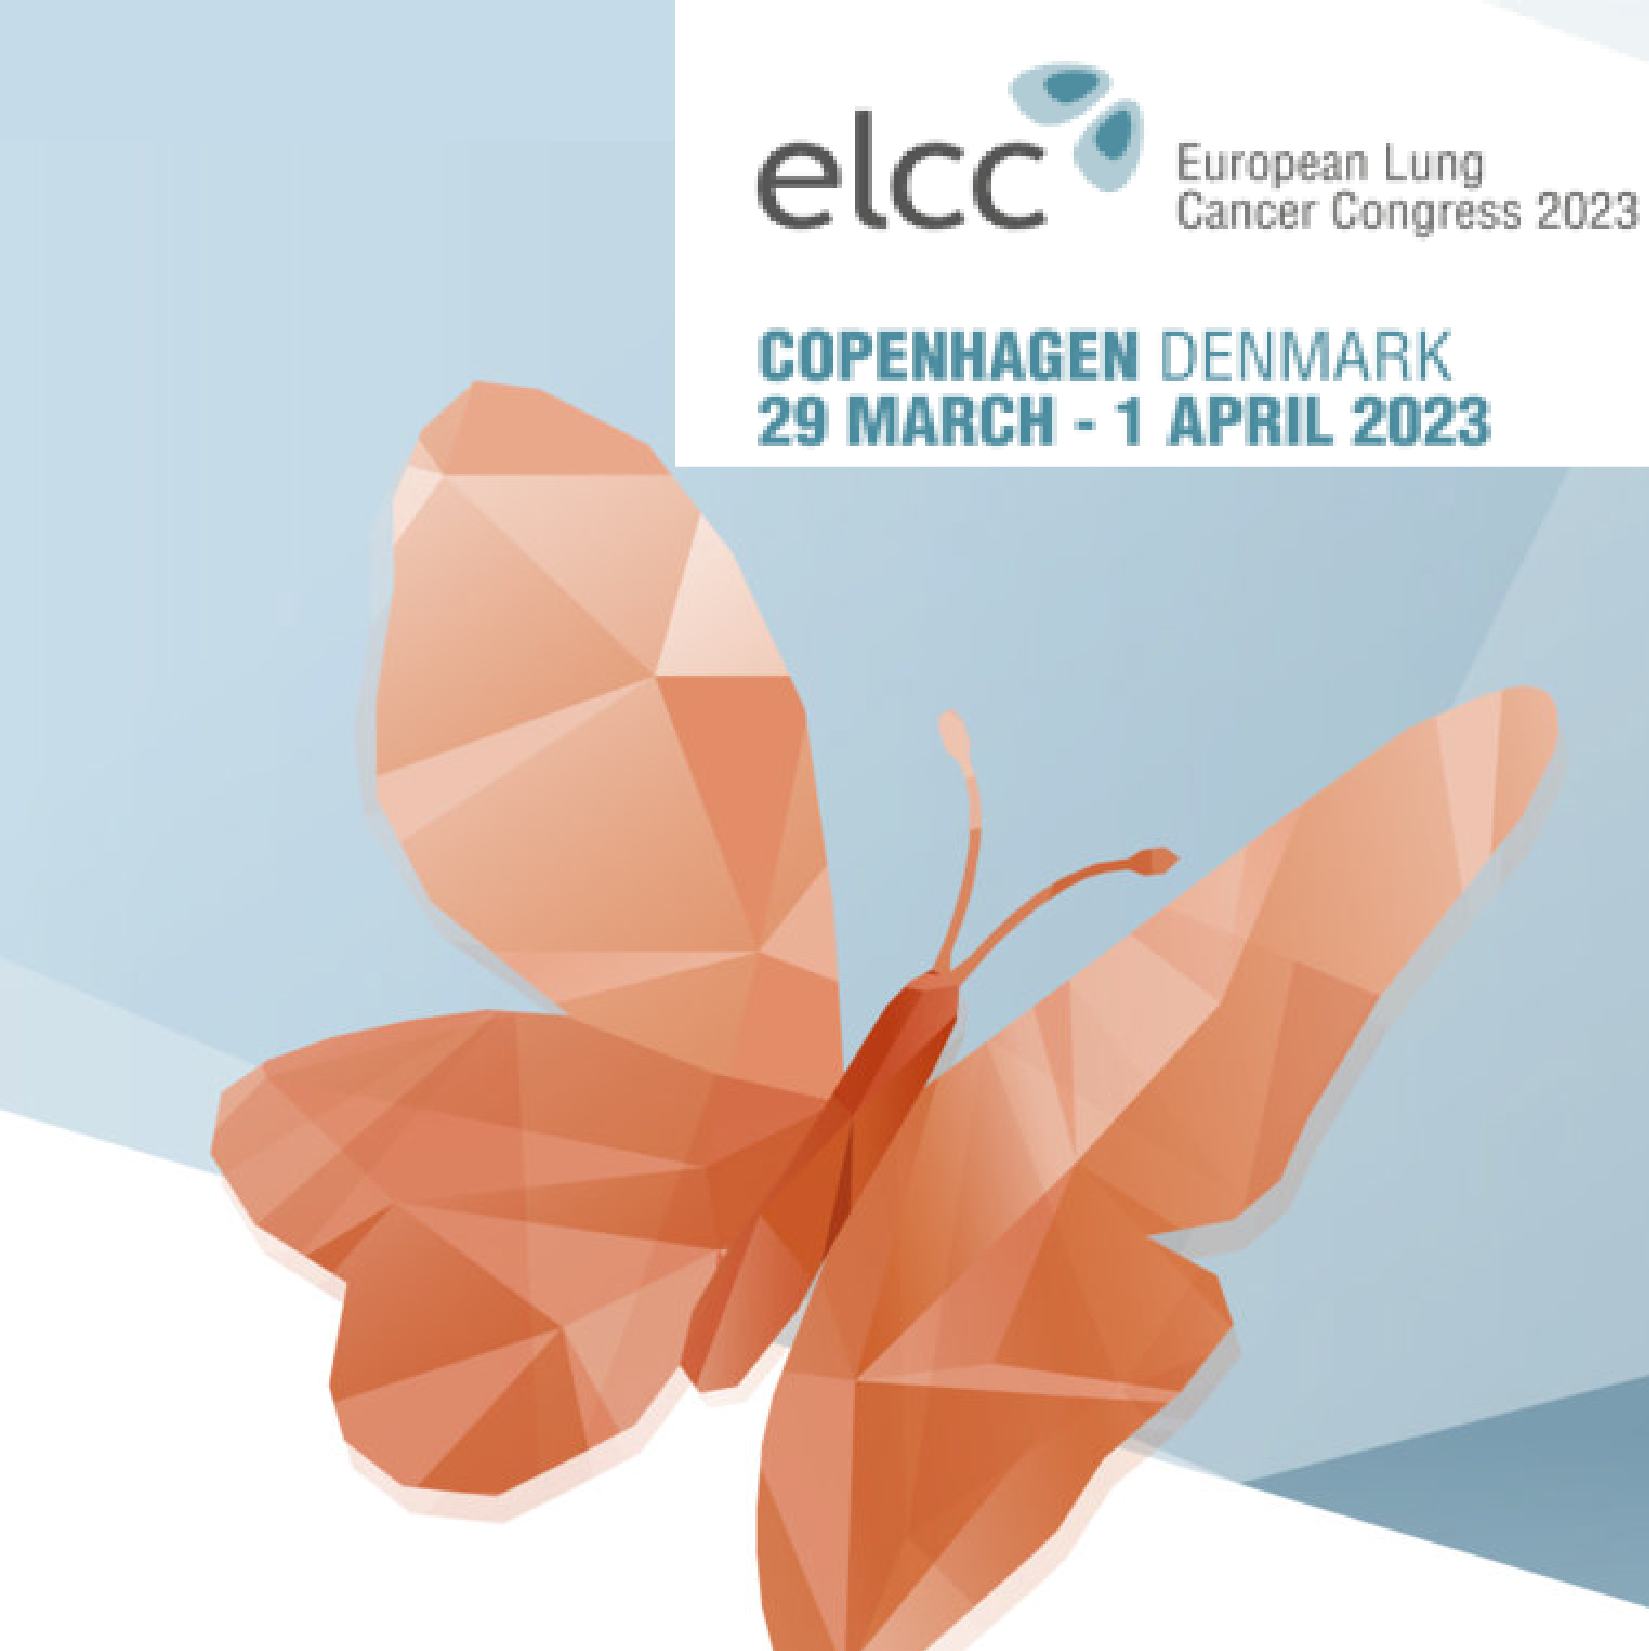 European Lung Cancer Congress - ELCC 2023